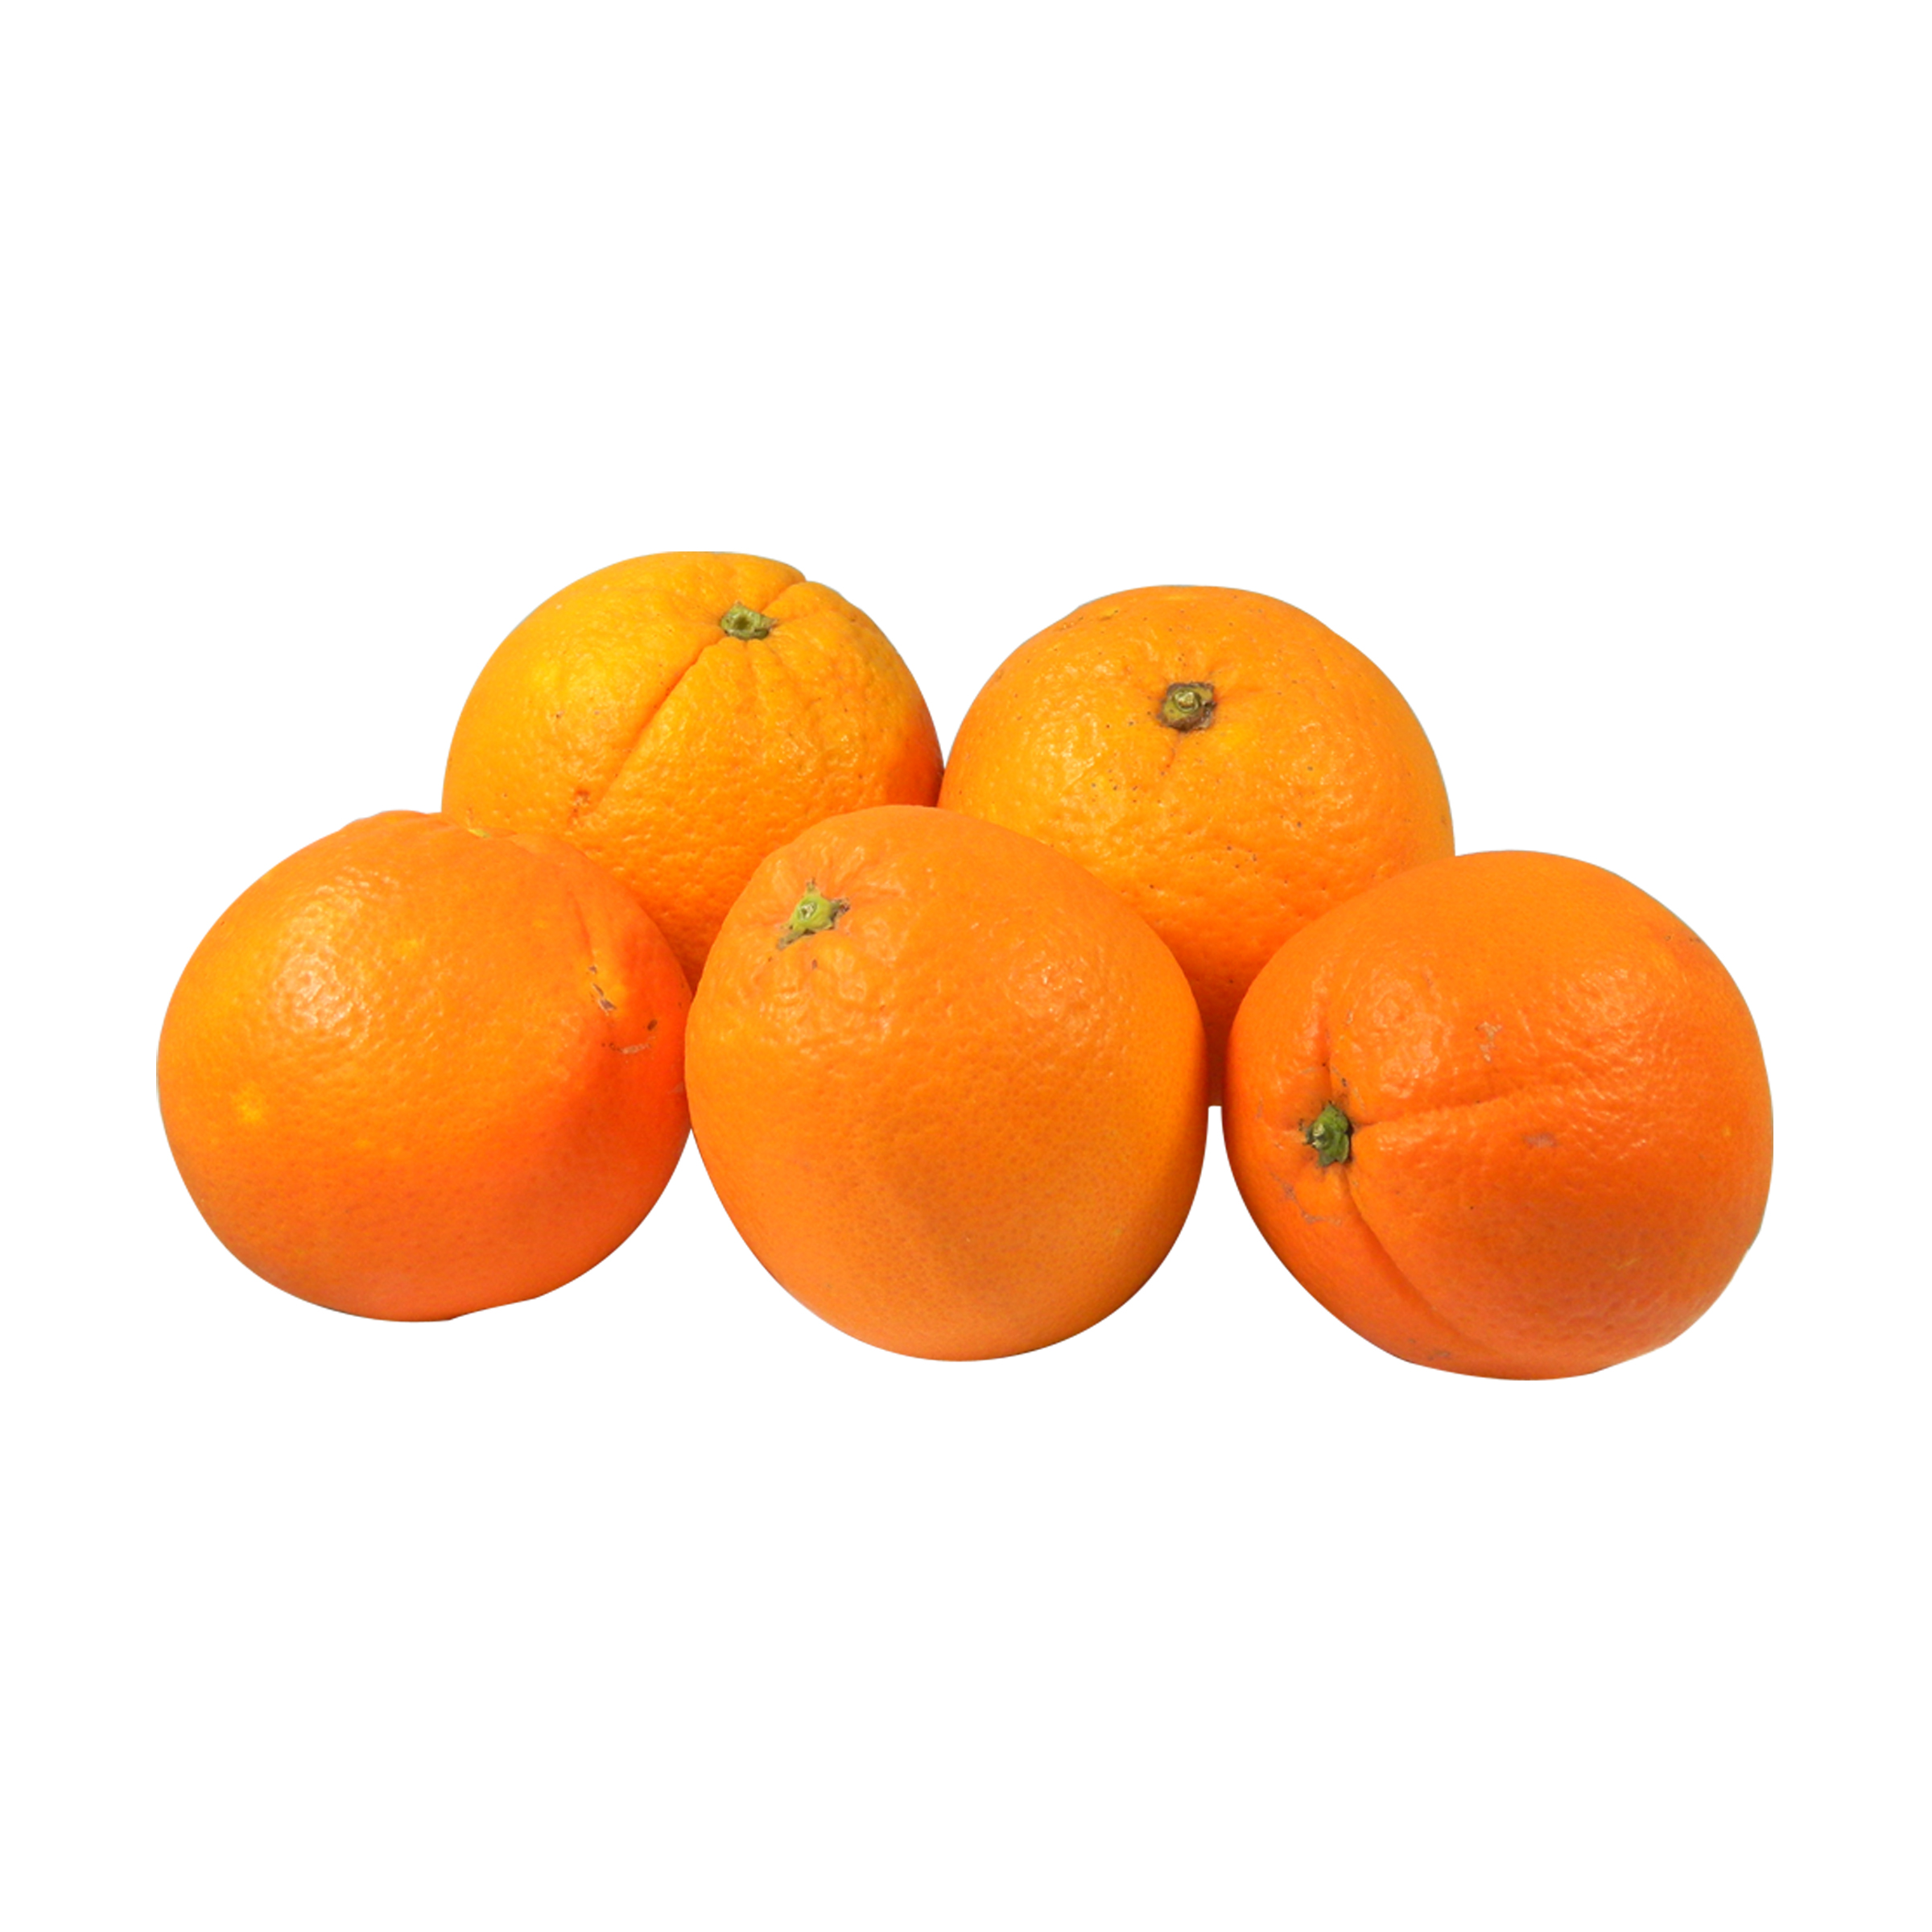 Orangen, Orangen & weitere Südfrüchte, Obst & Beeren, Gemüse & Obst